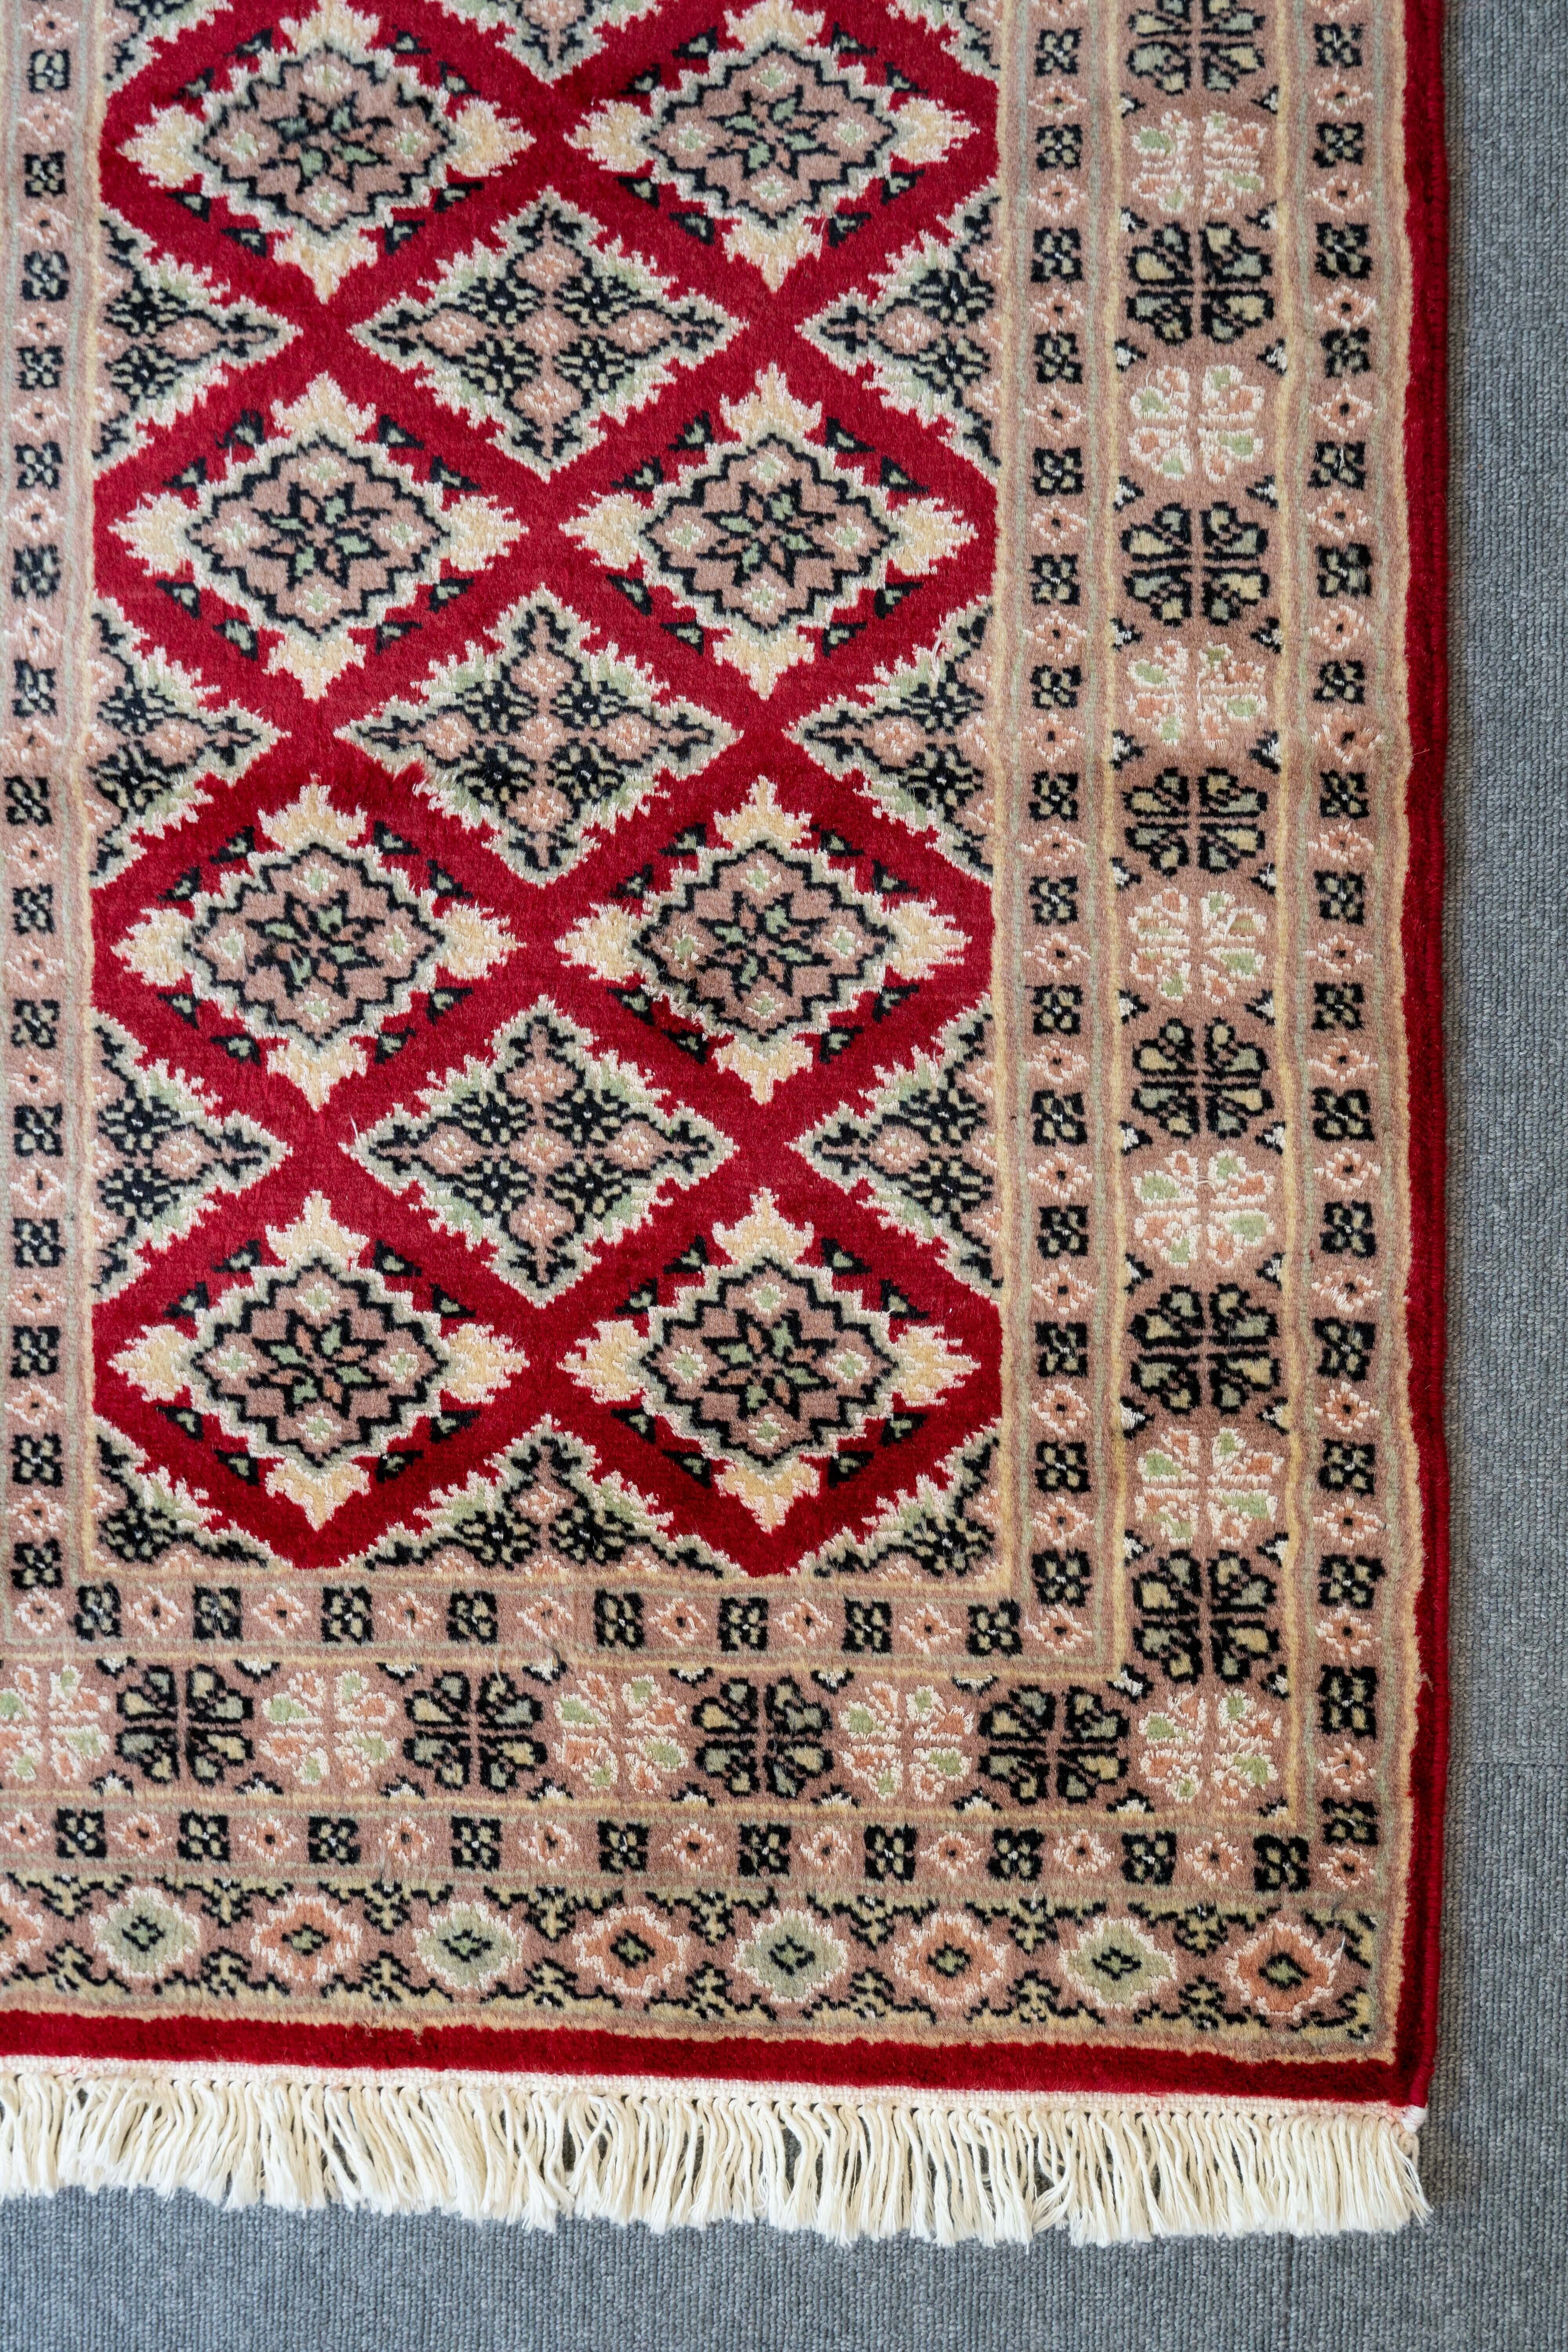 パキスタン 手織り絨毯 玄関マット size:92×63cm stn:84-